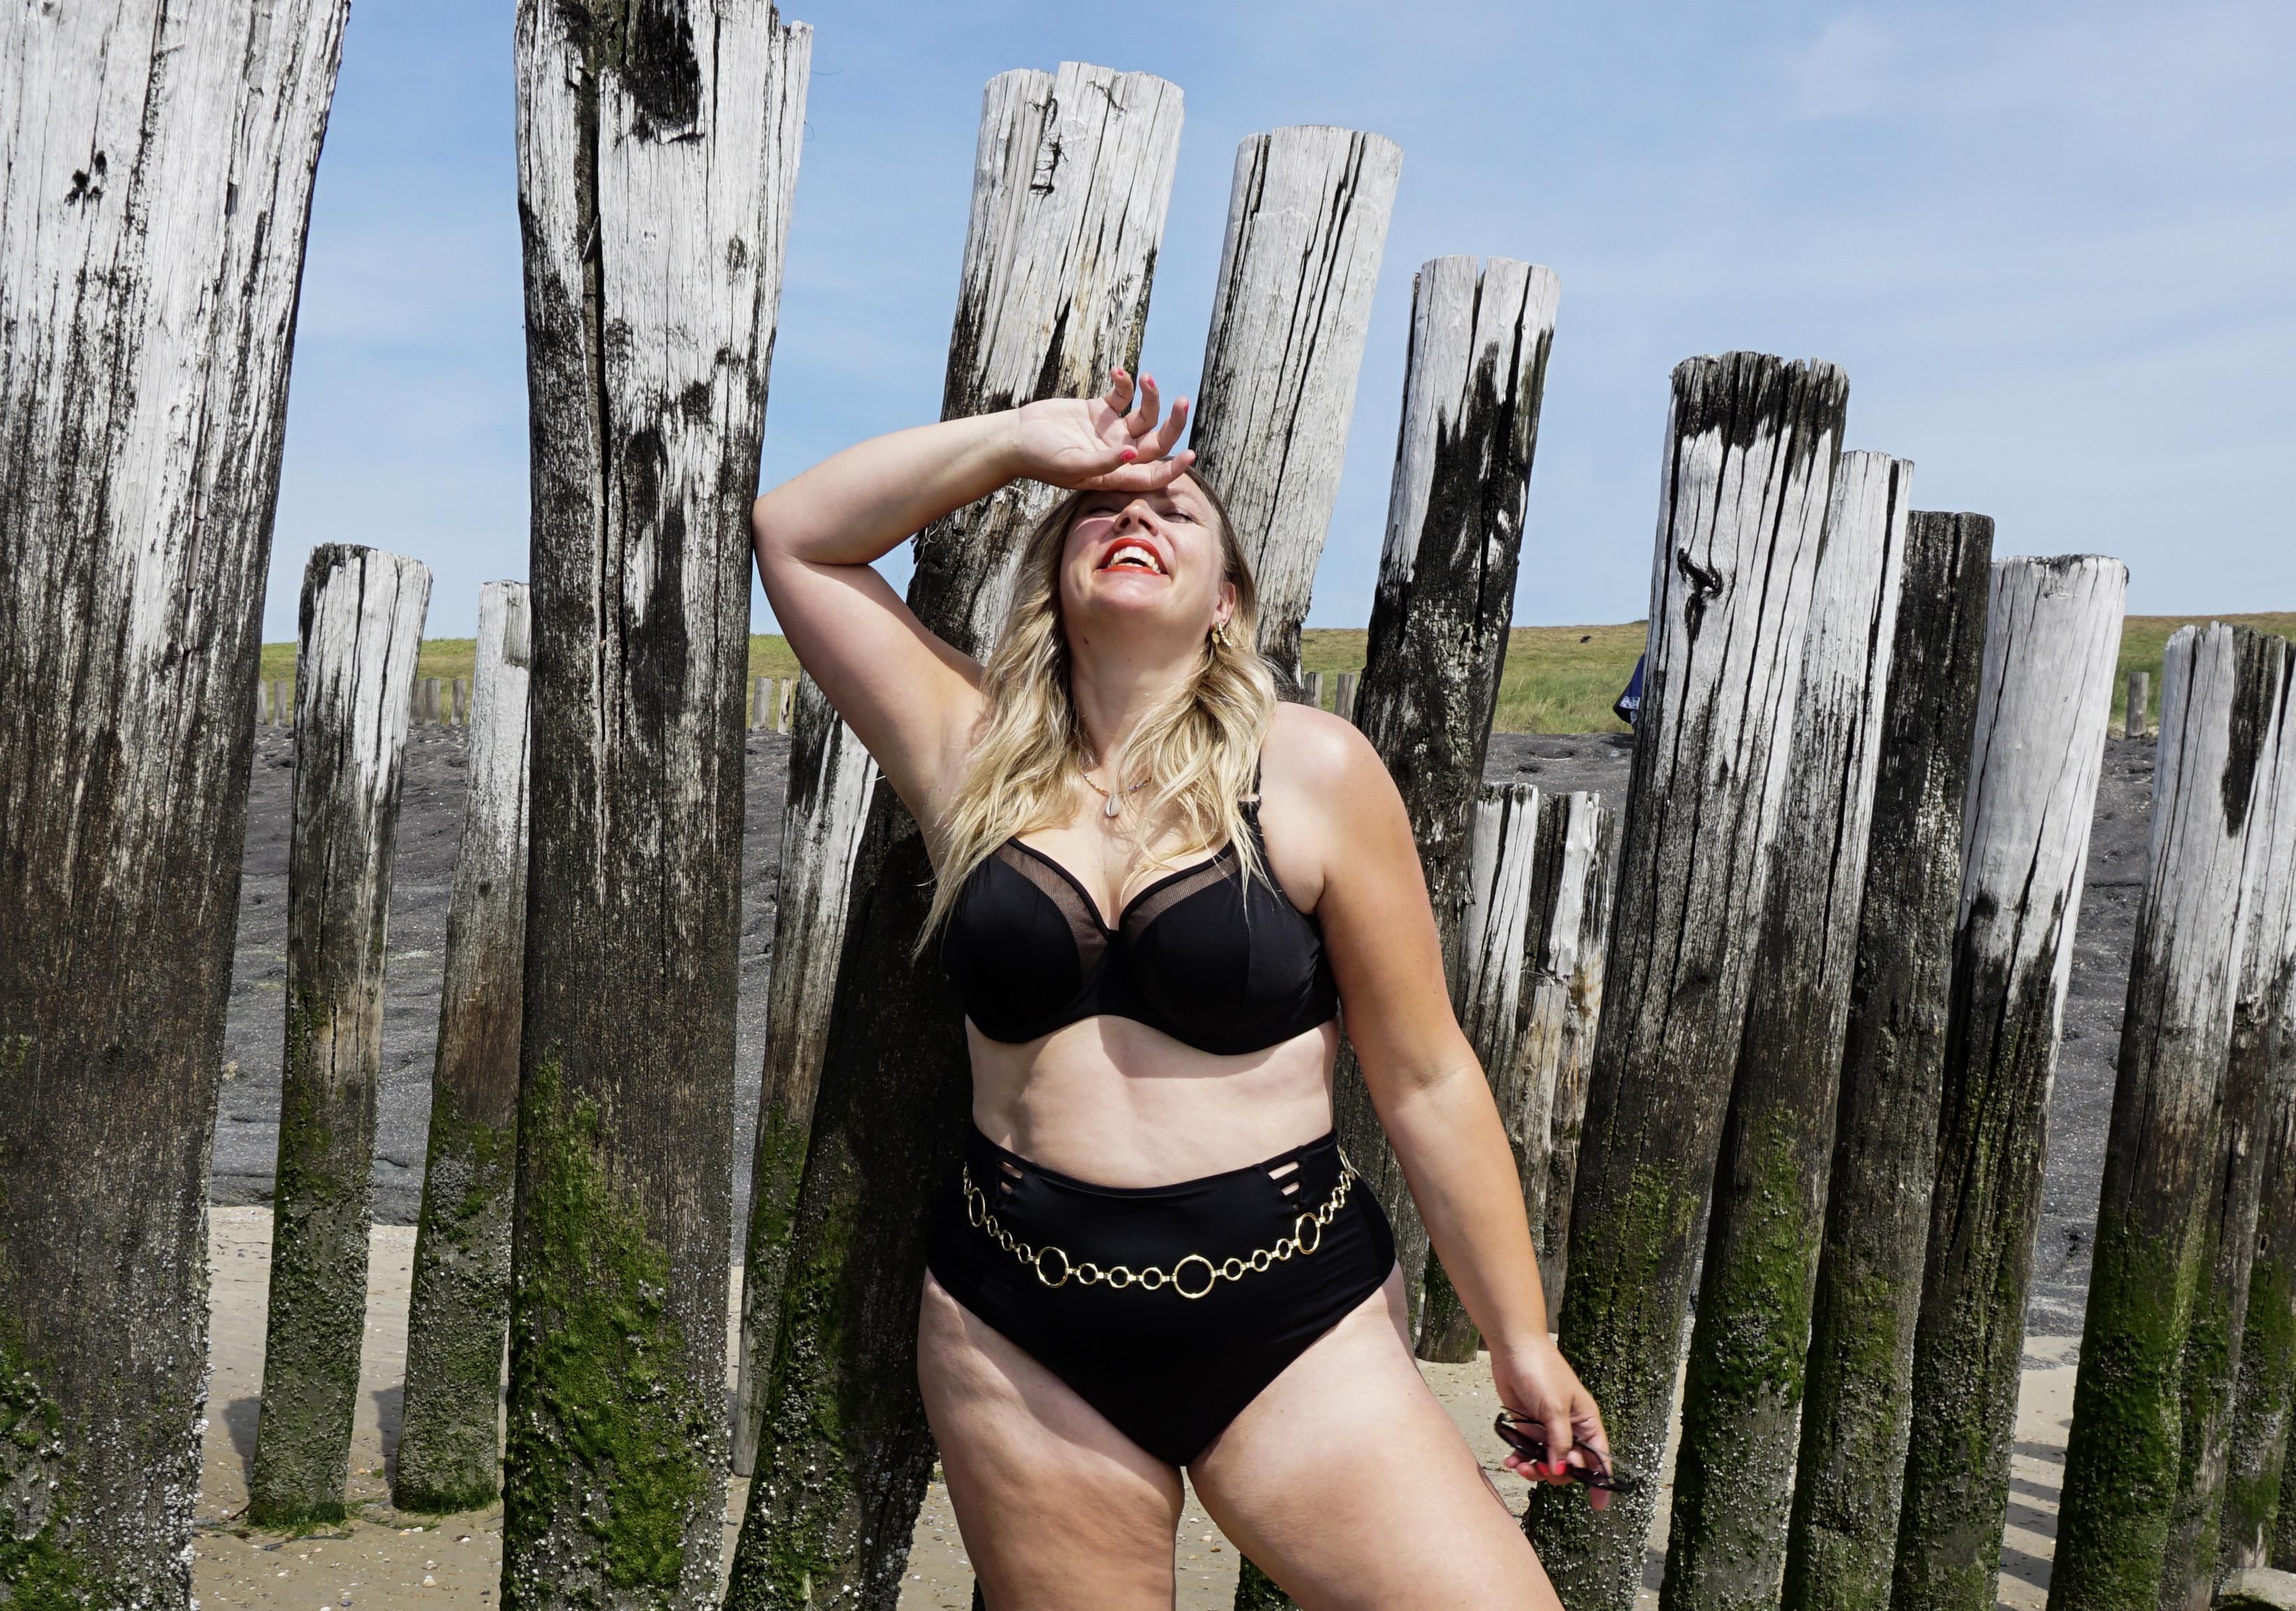 Triviaal olifant navigatie Modestyliste Edith Dohmen: 'Bravo voor Linda de Mol in bikini, dat ze  zichzelf op haar 56ste eindelijk heeft geaccepteerd' | Noordhollandsdagblad